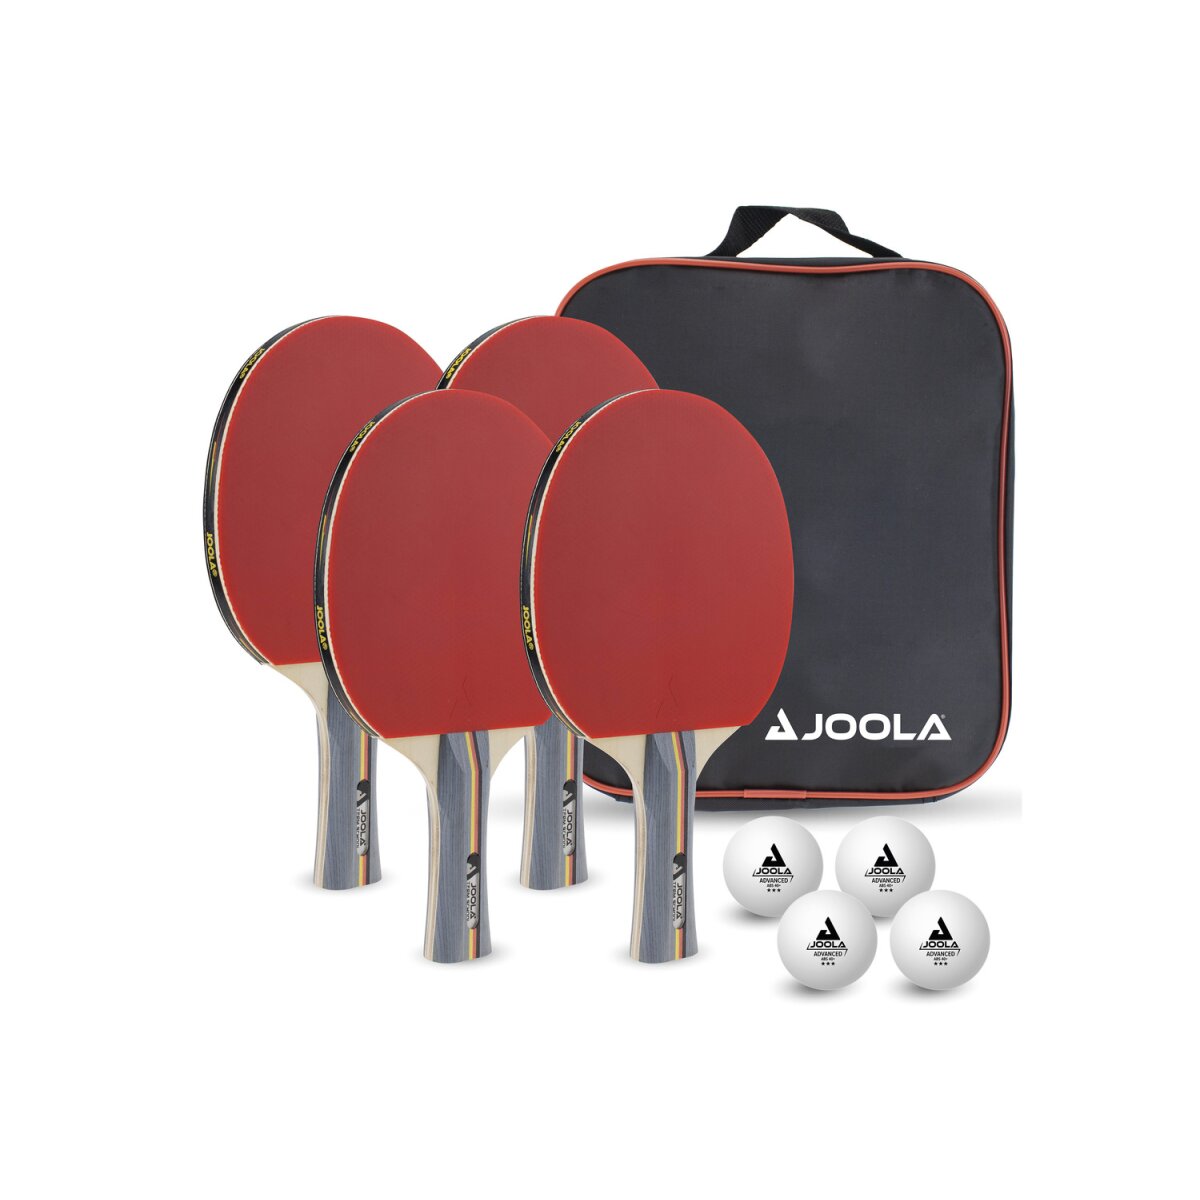 JOOLA Tischtennis-Set »Team School«, mit 4 Schlägern und 4 Bällen - B-Ware  sehr gut, 13,99 €